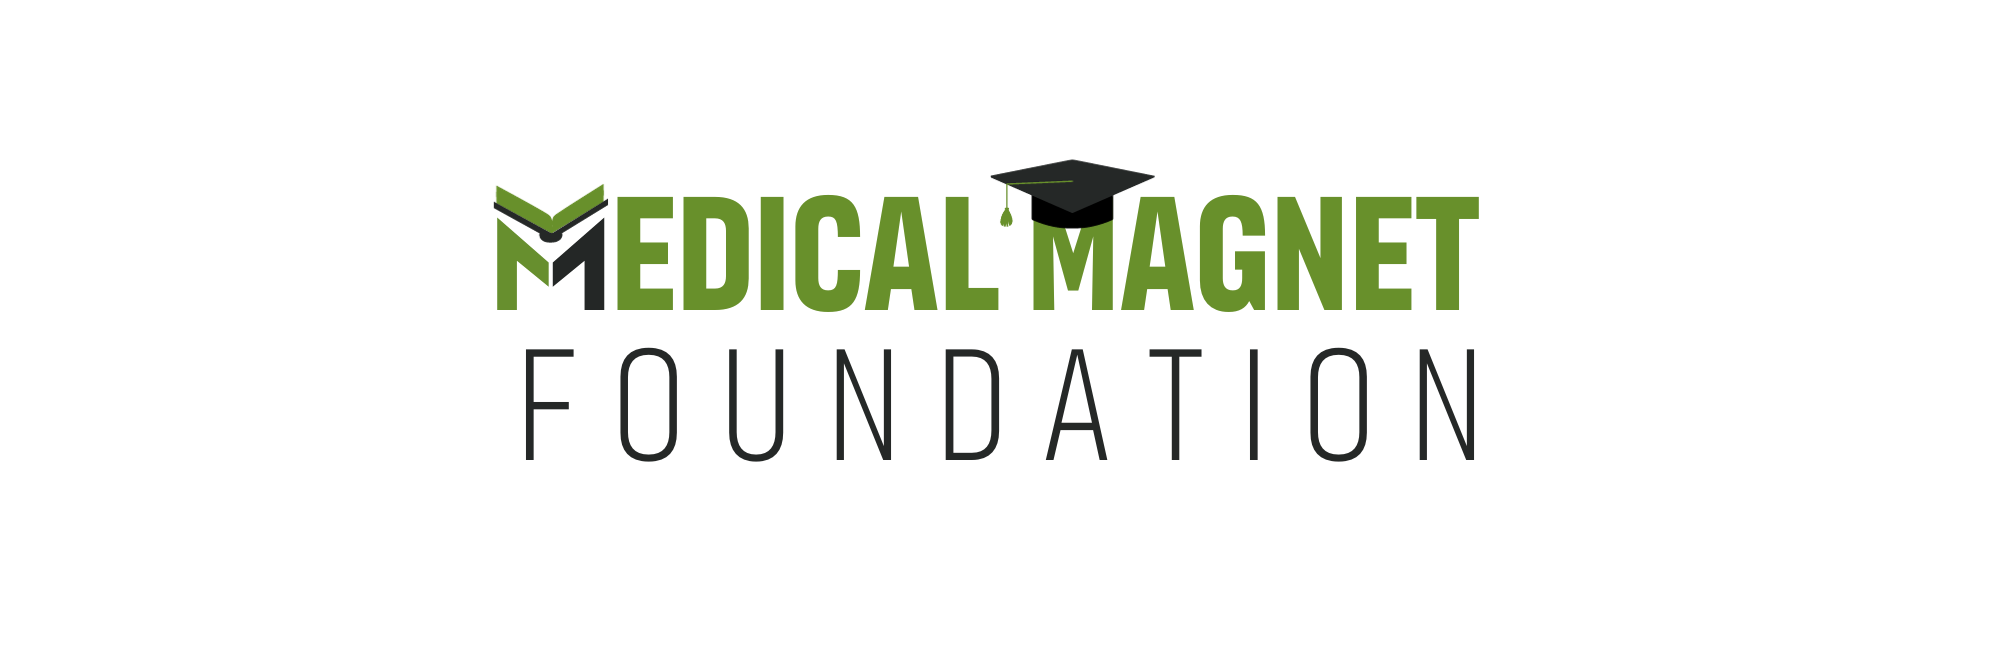 Medical Magnet Foundation Logo